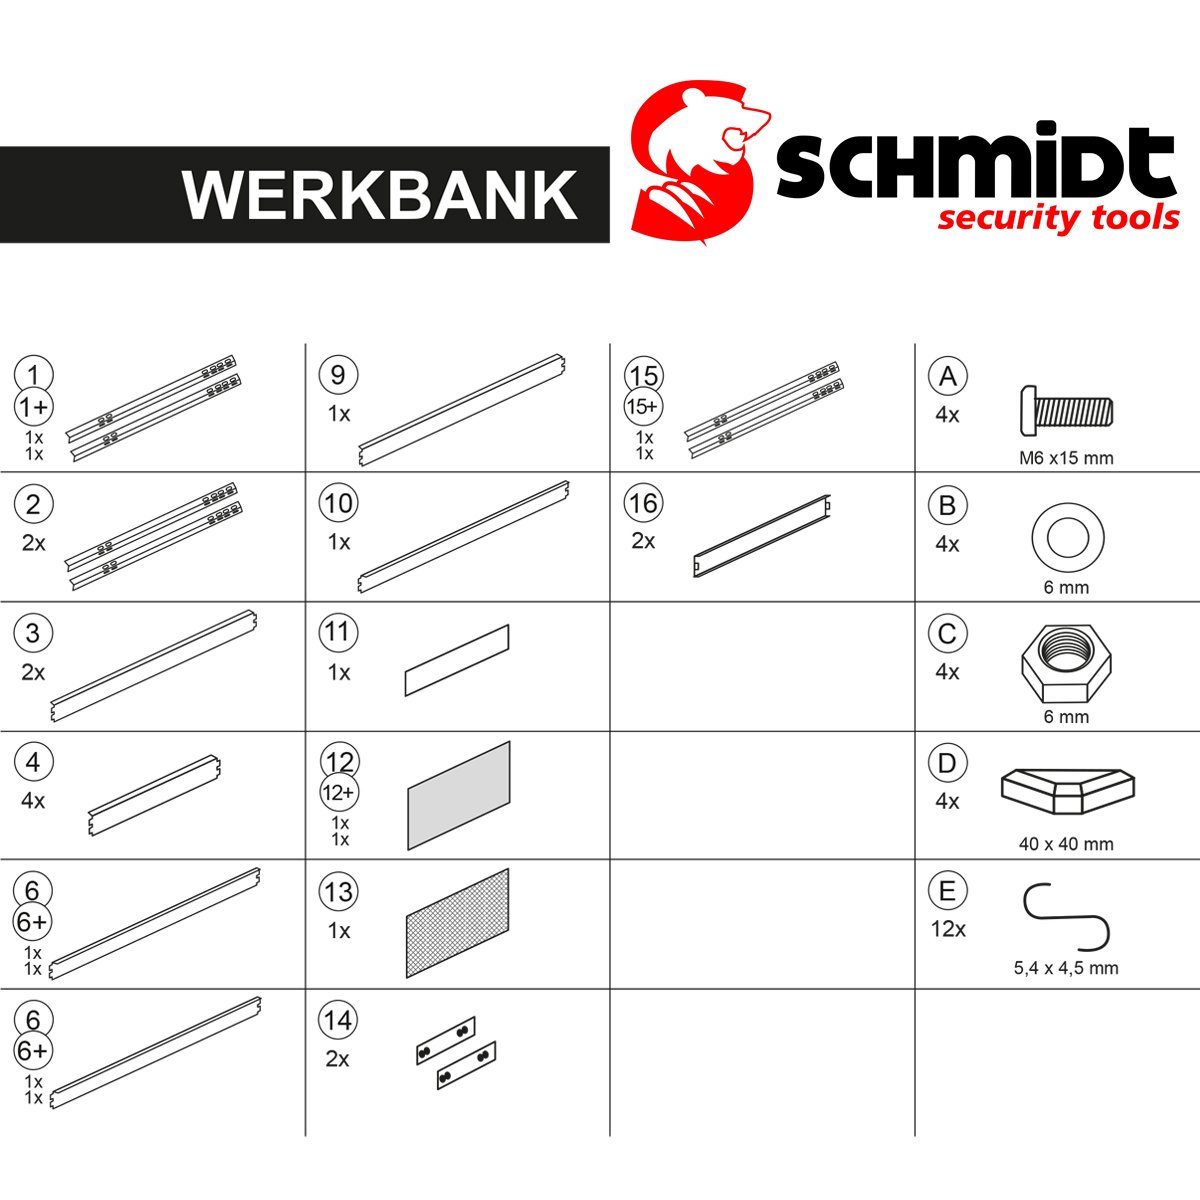 140x90x48cm Werkbank security Werkzeugbank Lochwand Werktisch SCHMIDT Werkzeugwand tools Arbeitstisch